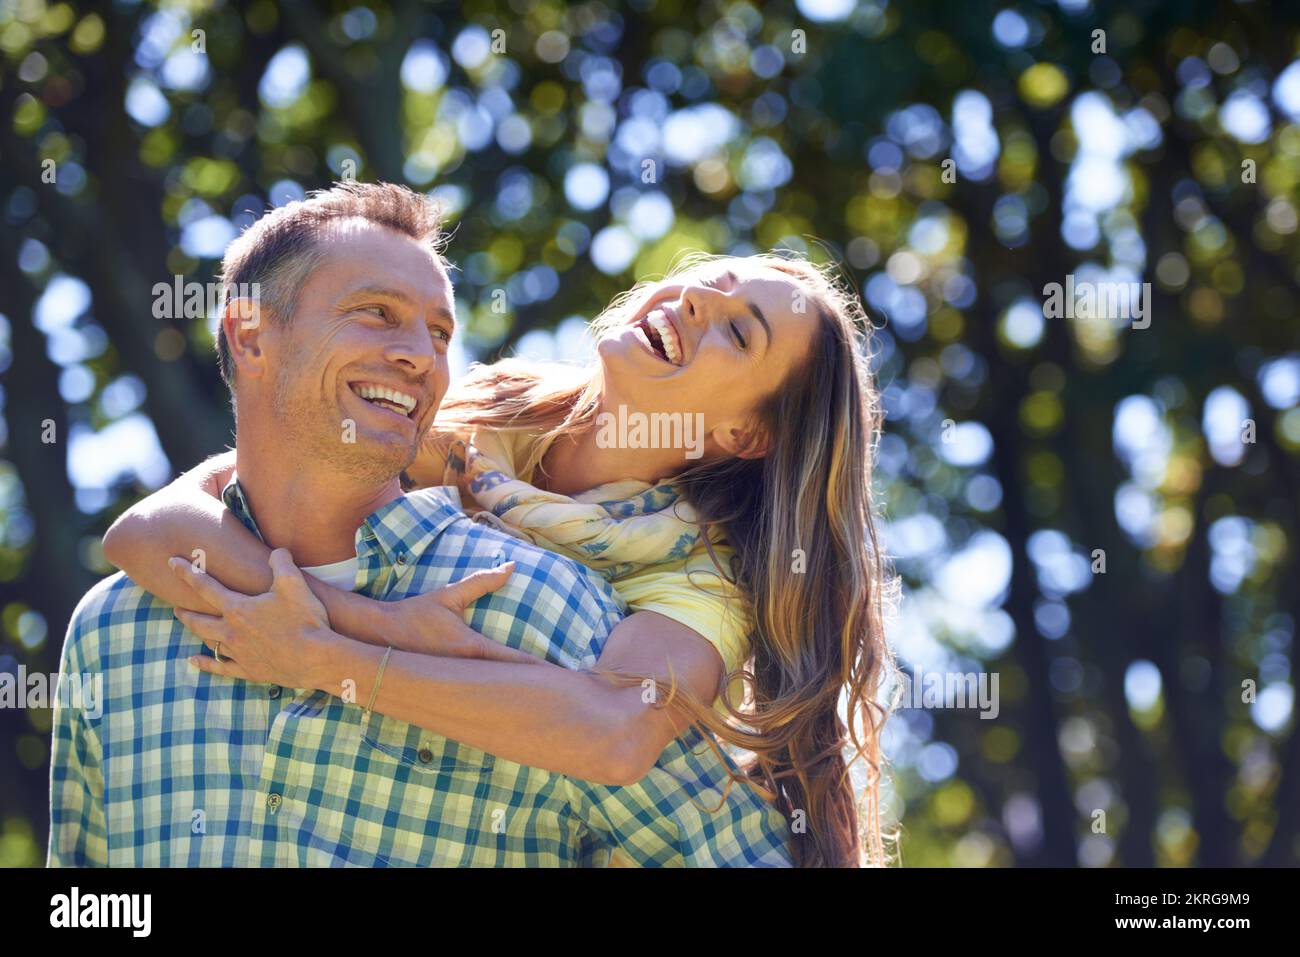 Ihre Liebe ist klar zu erkennen. Ein liebevolles Paar, das sich in der Sommersonne umarmt. Stockfoto